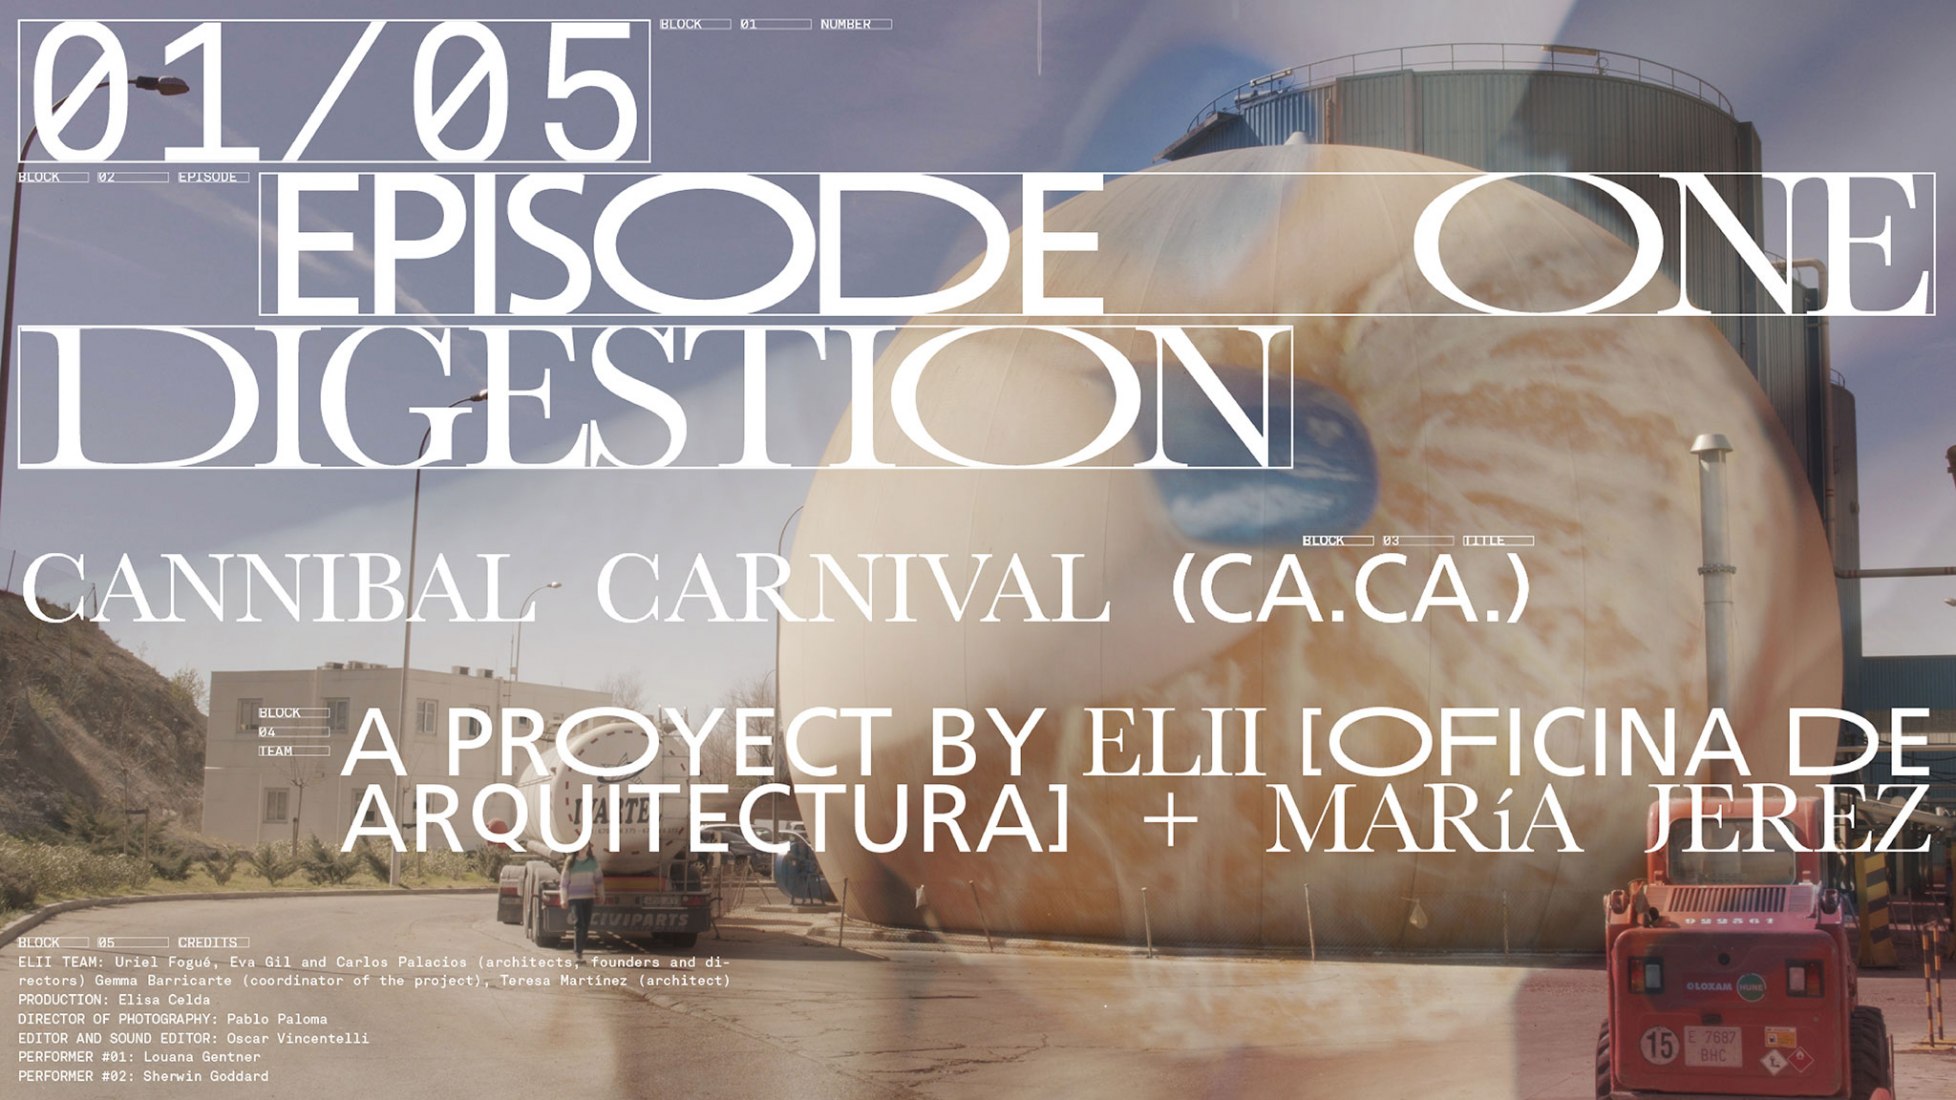 Cartel de «DIGESTION - Ca.Ca, (Cannibal Carnival)», cortometraje por Elii (Uriel Fogué, Carlos Palacios, Eva Gil) + María Jerez para FOODSCAPES.